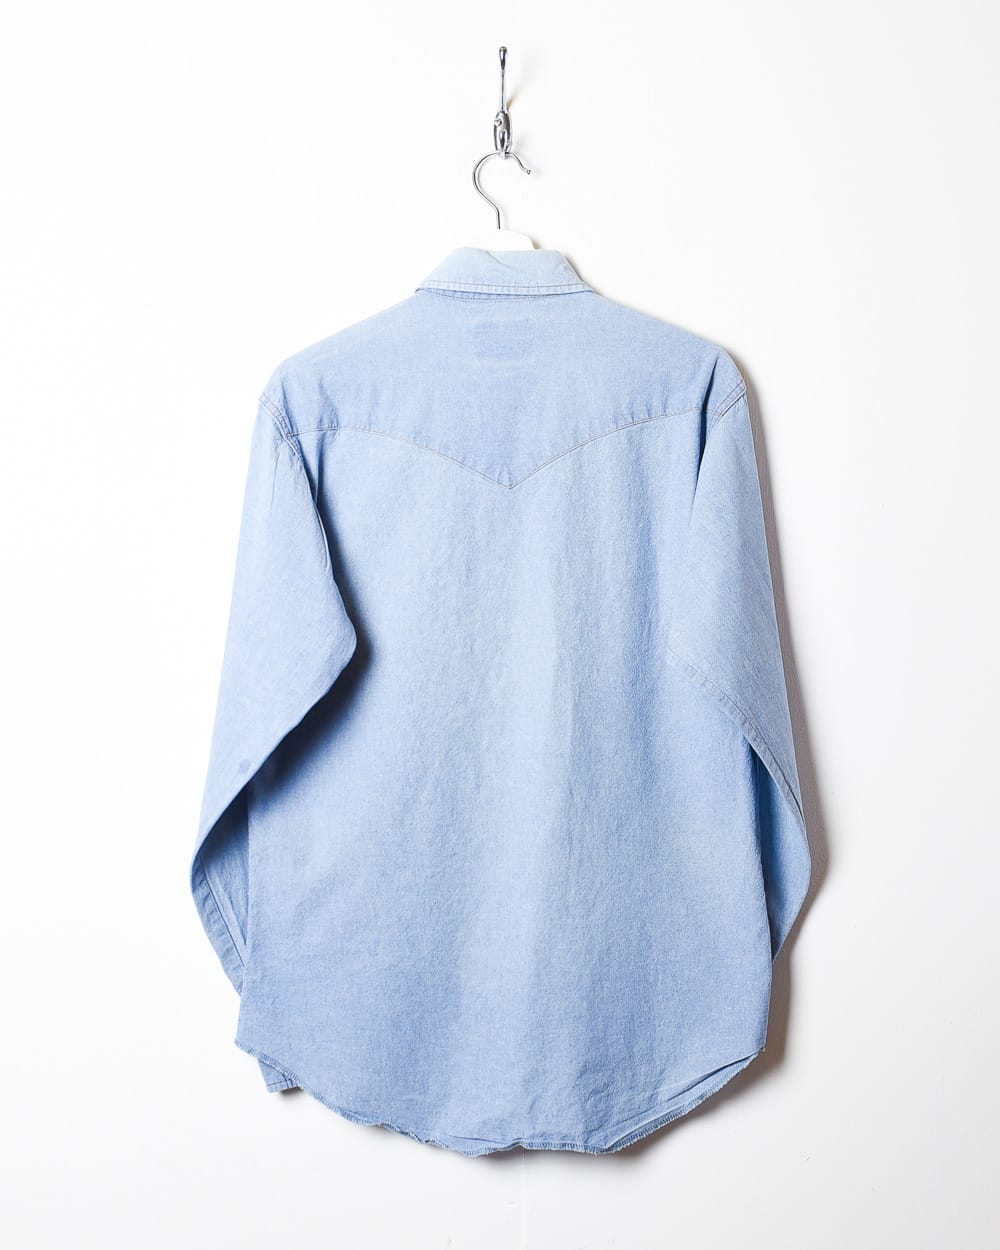 Blue Wrangler Denim Shirt - Small